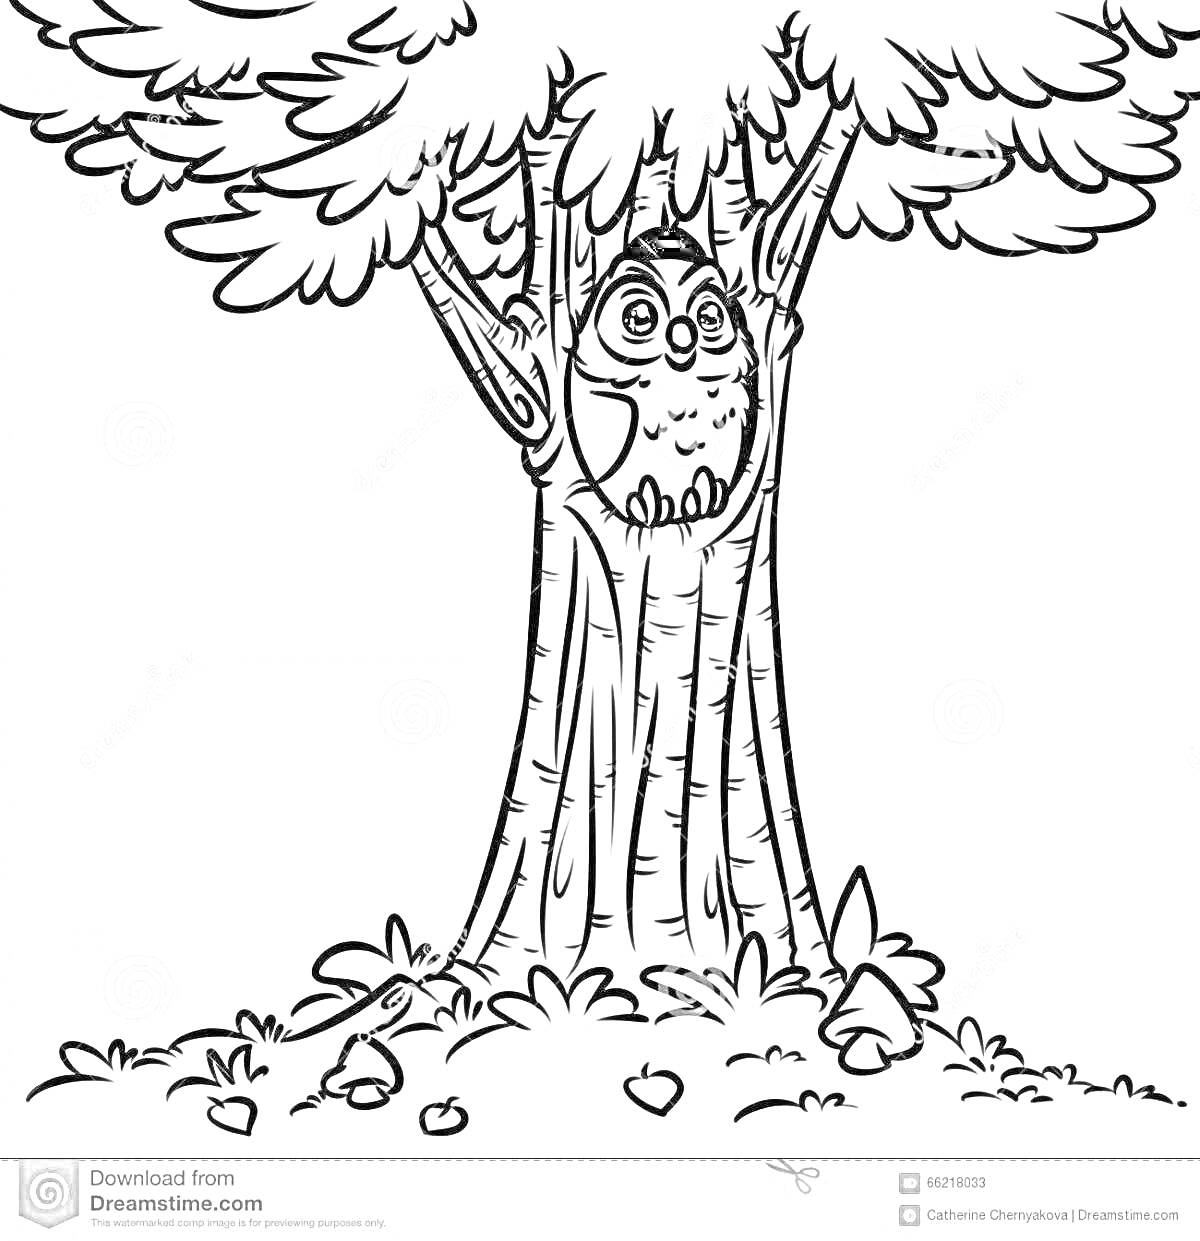 Раскраска Дерево с дуплом и совой, листьями и травой вокруг ствола